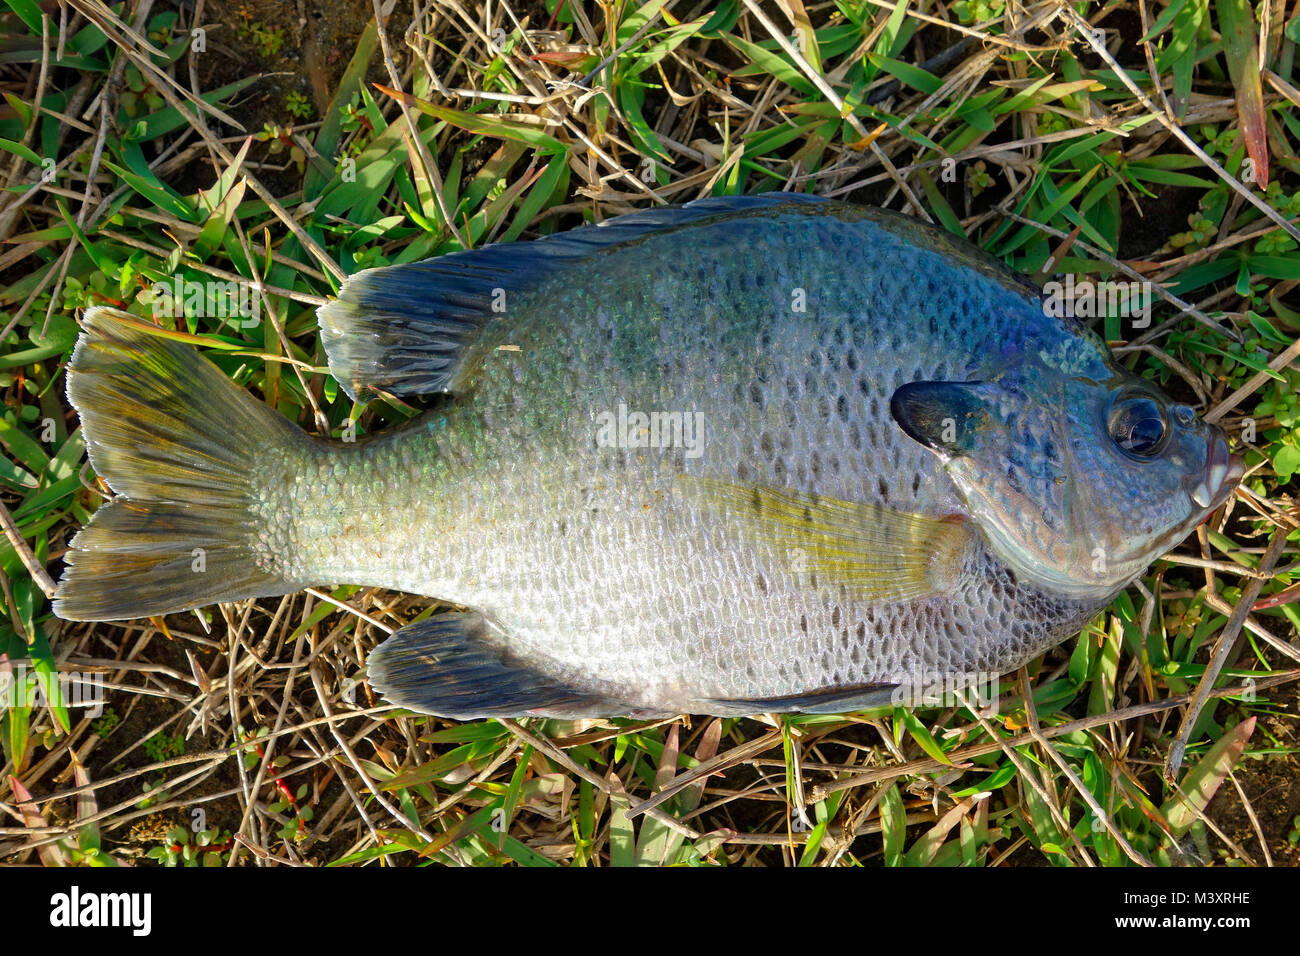 A Bluegill fish species Stock Photo